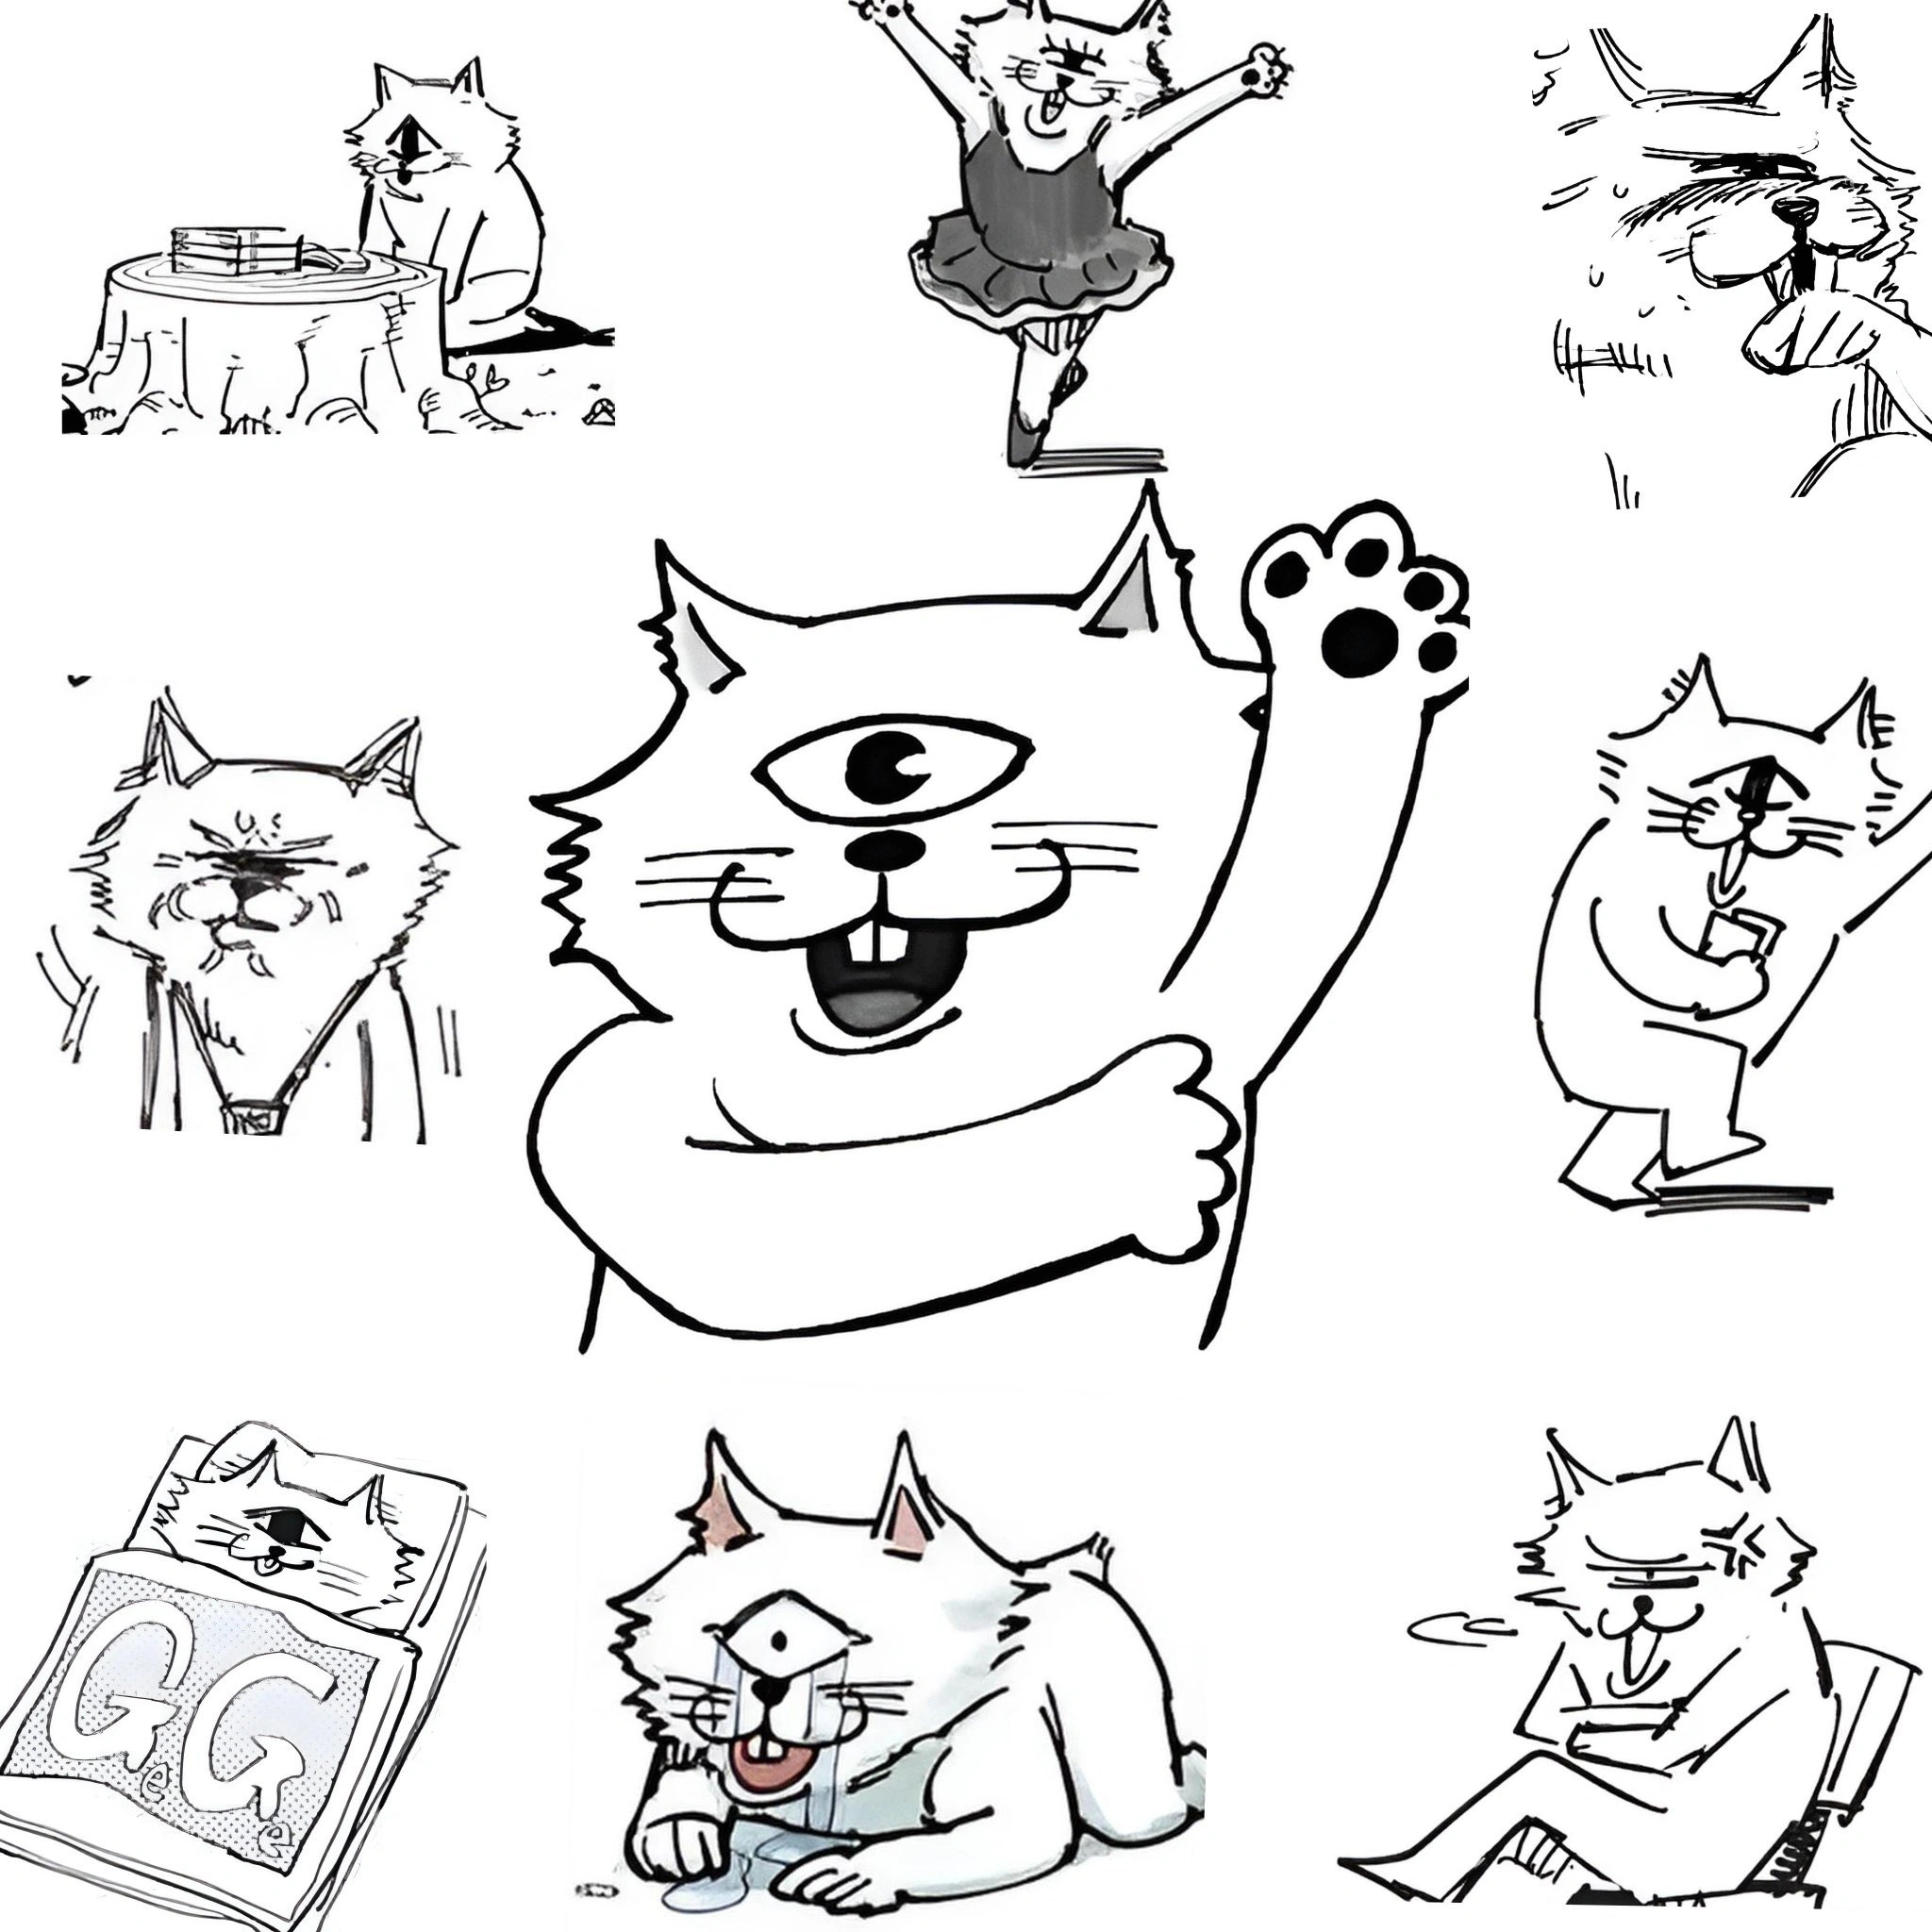 Акутами-сэнсэй (автор «Магической битвы») объяснил причину создания собственного аватара кота-циклопа 